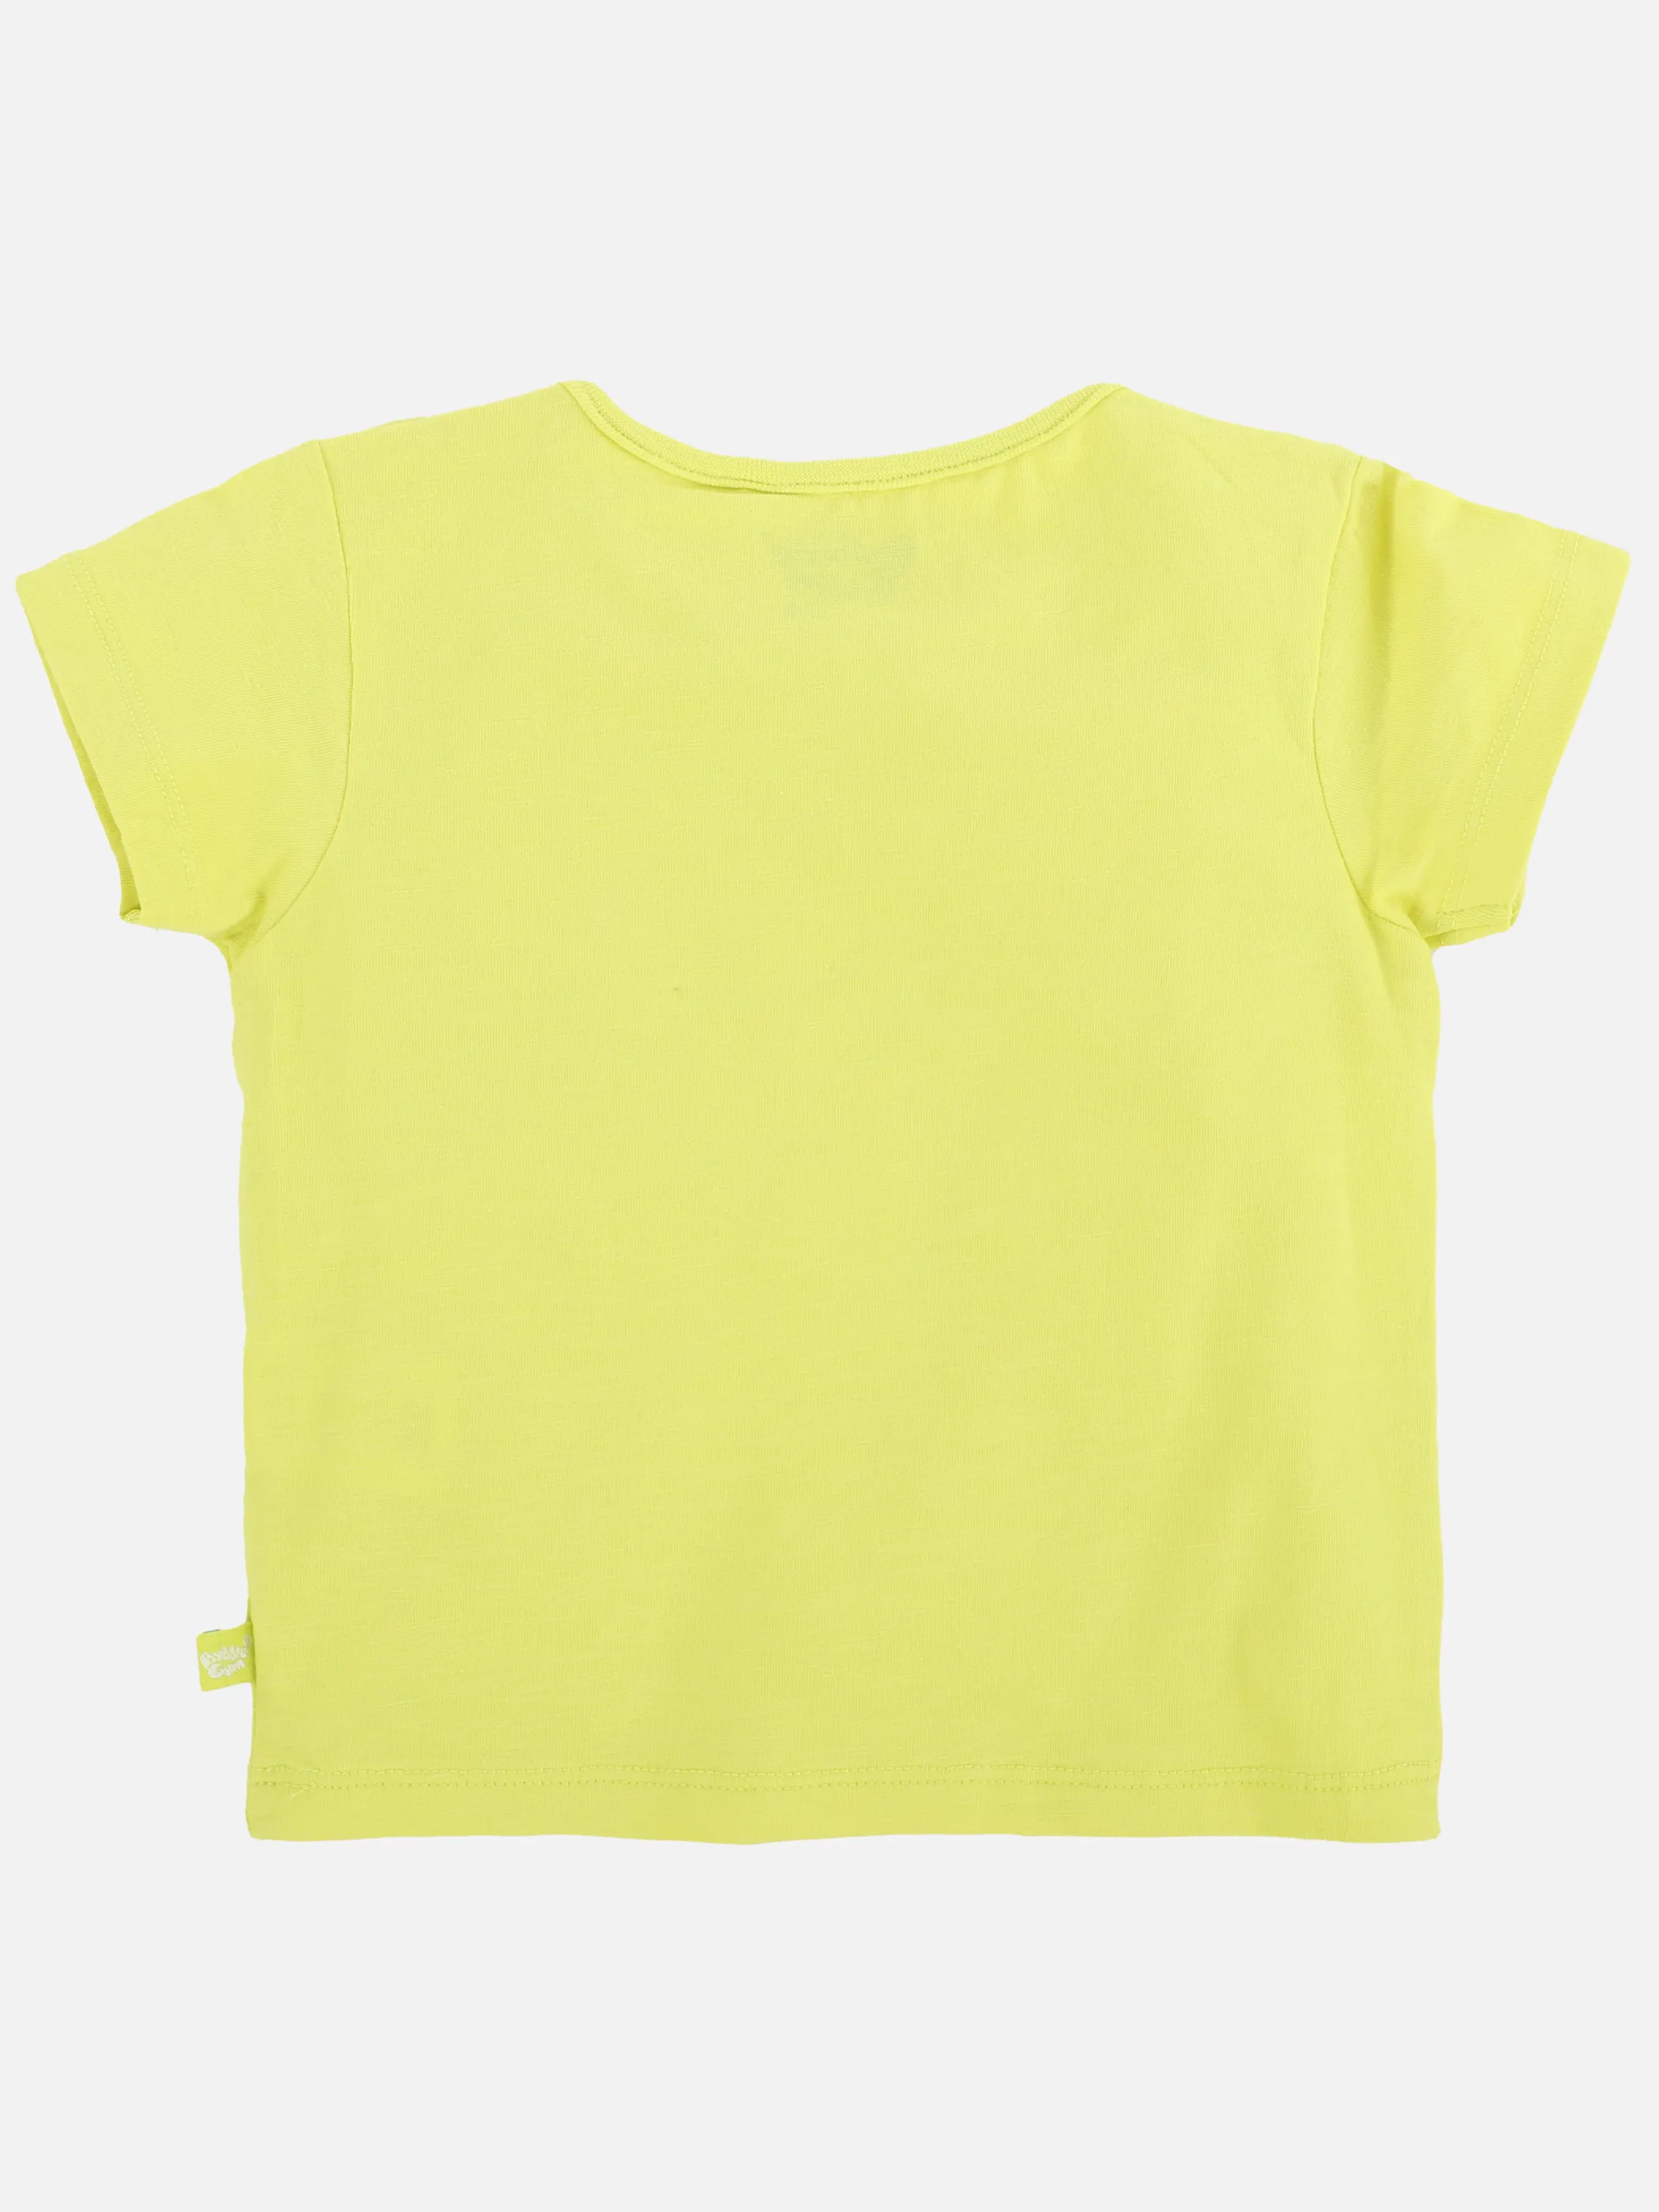 Bubble Gum BJ T-shirt mit Frontdruck und Applikation in gelb Gelb 892541 GELB 2